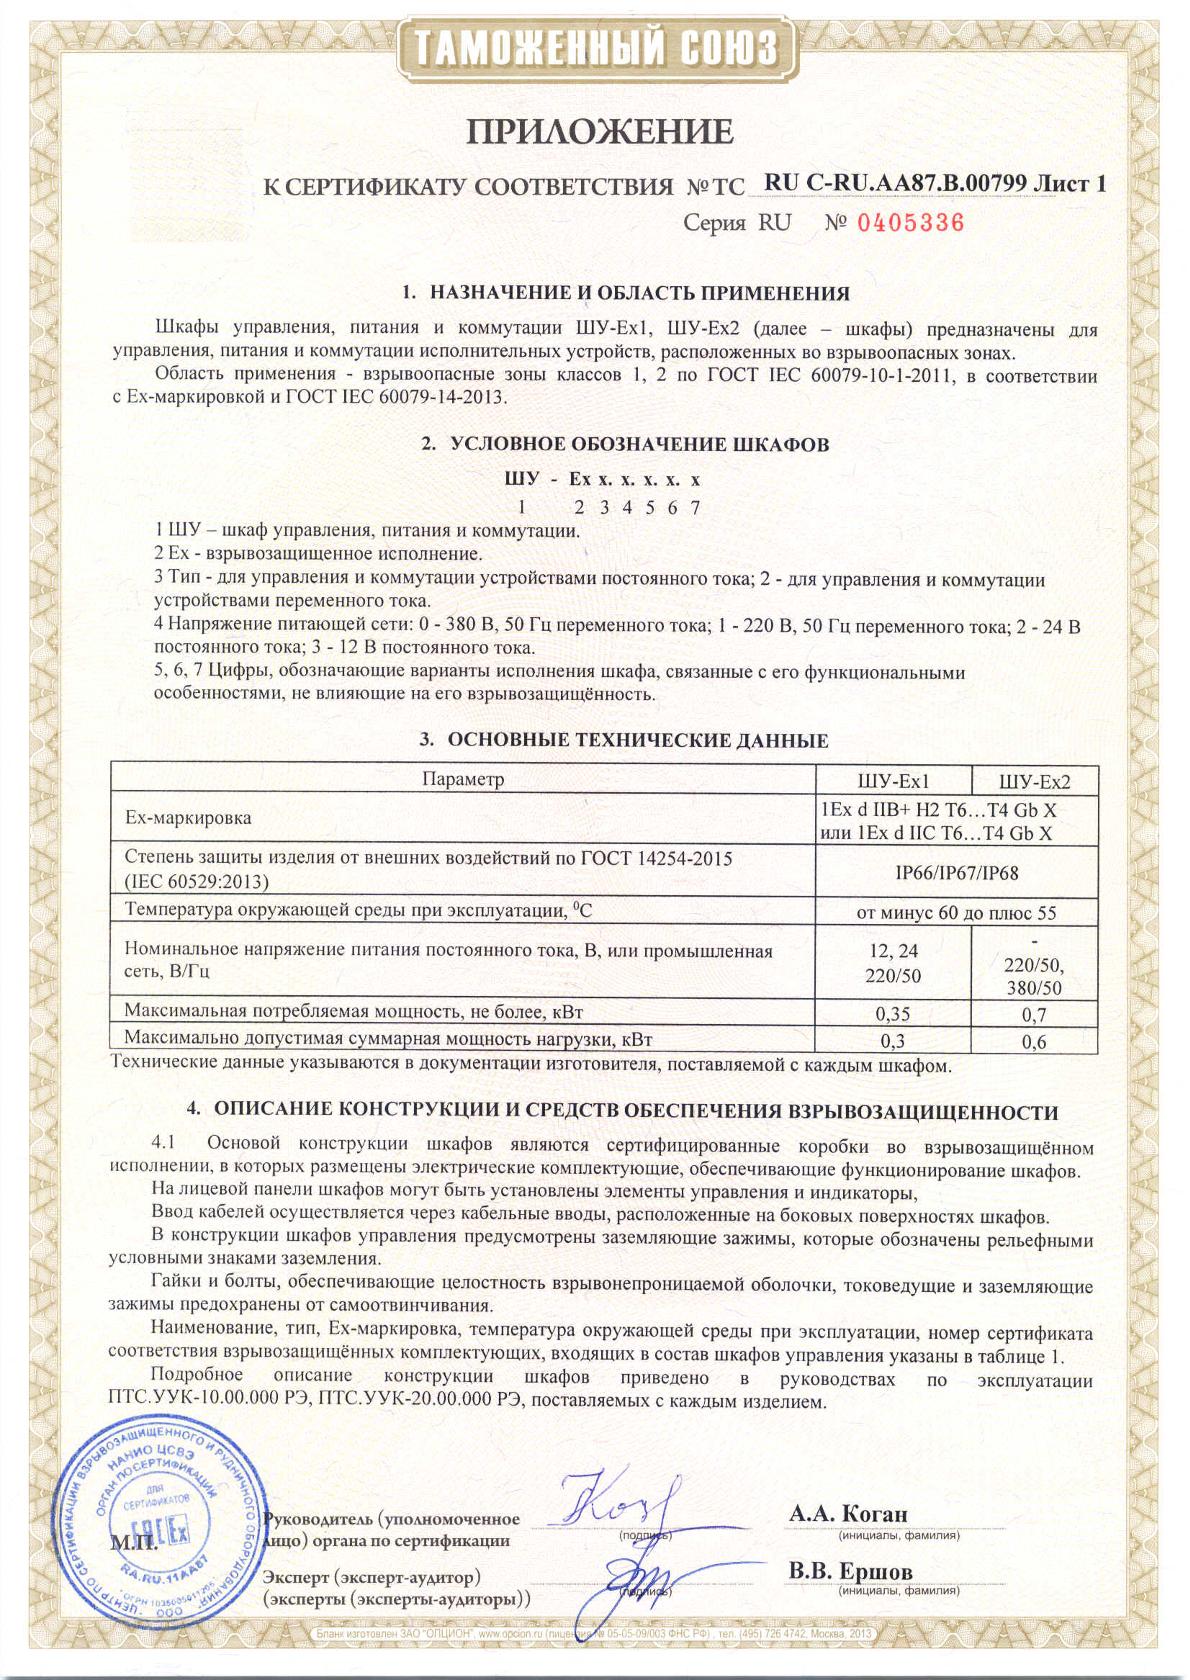 Сертификат соответствия Таможенного союза Шкафы управления, питания и коммутации. Приложение 1.